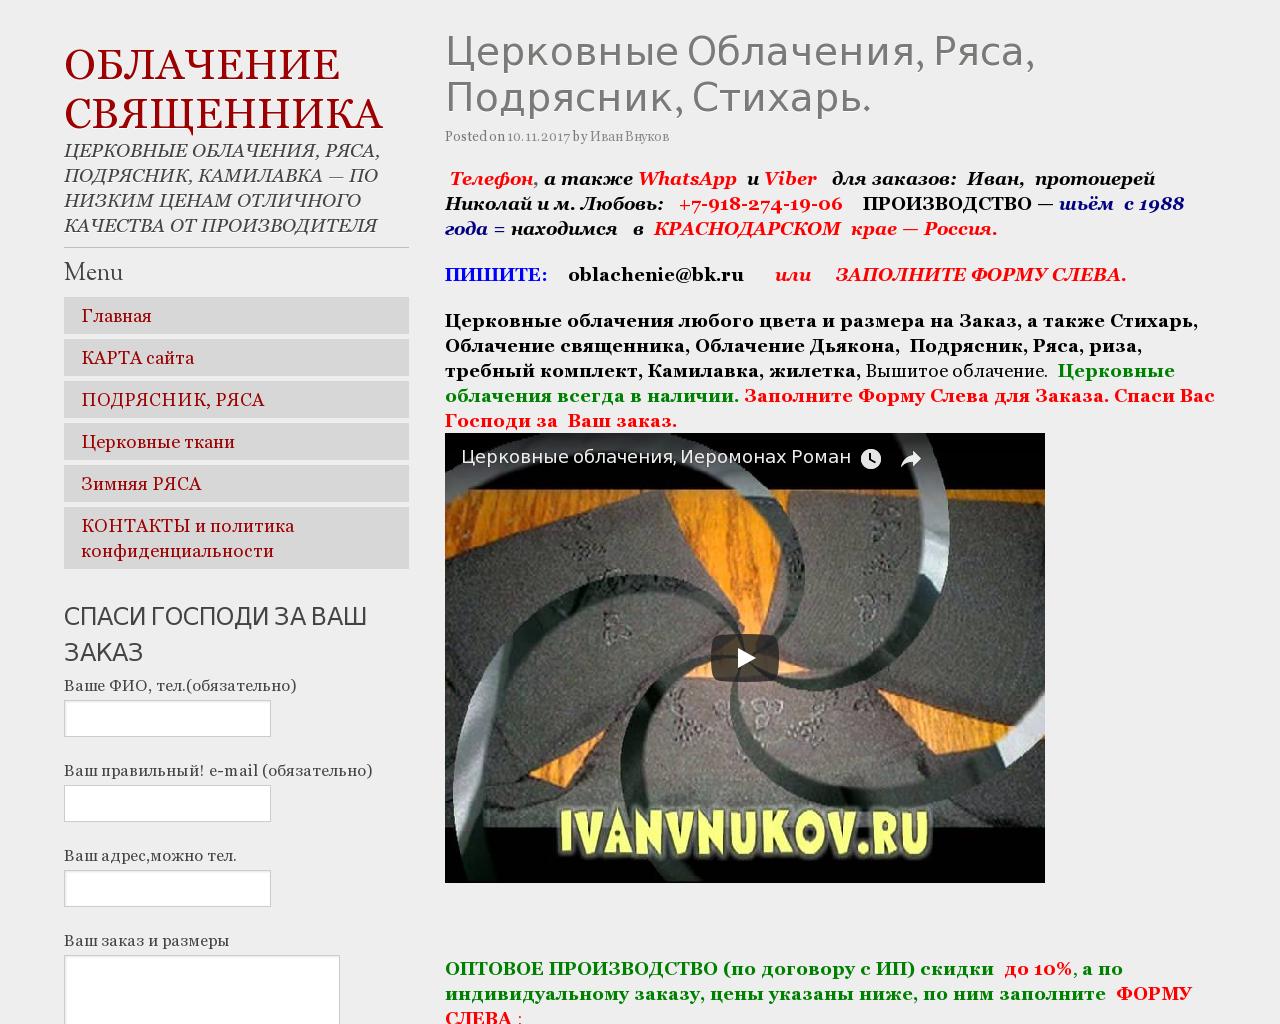 Изображение сайта ivanvnukov.ru в разрешении 1280x1024